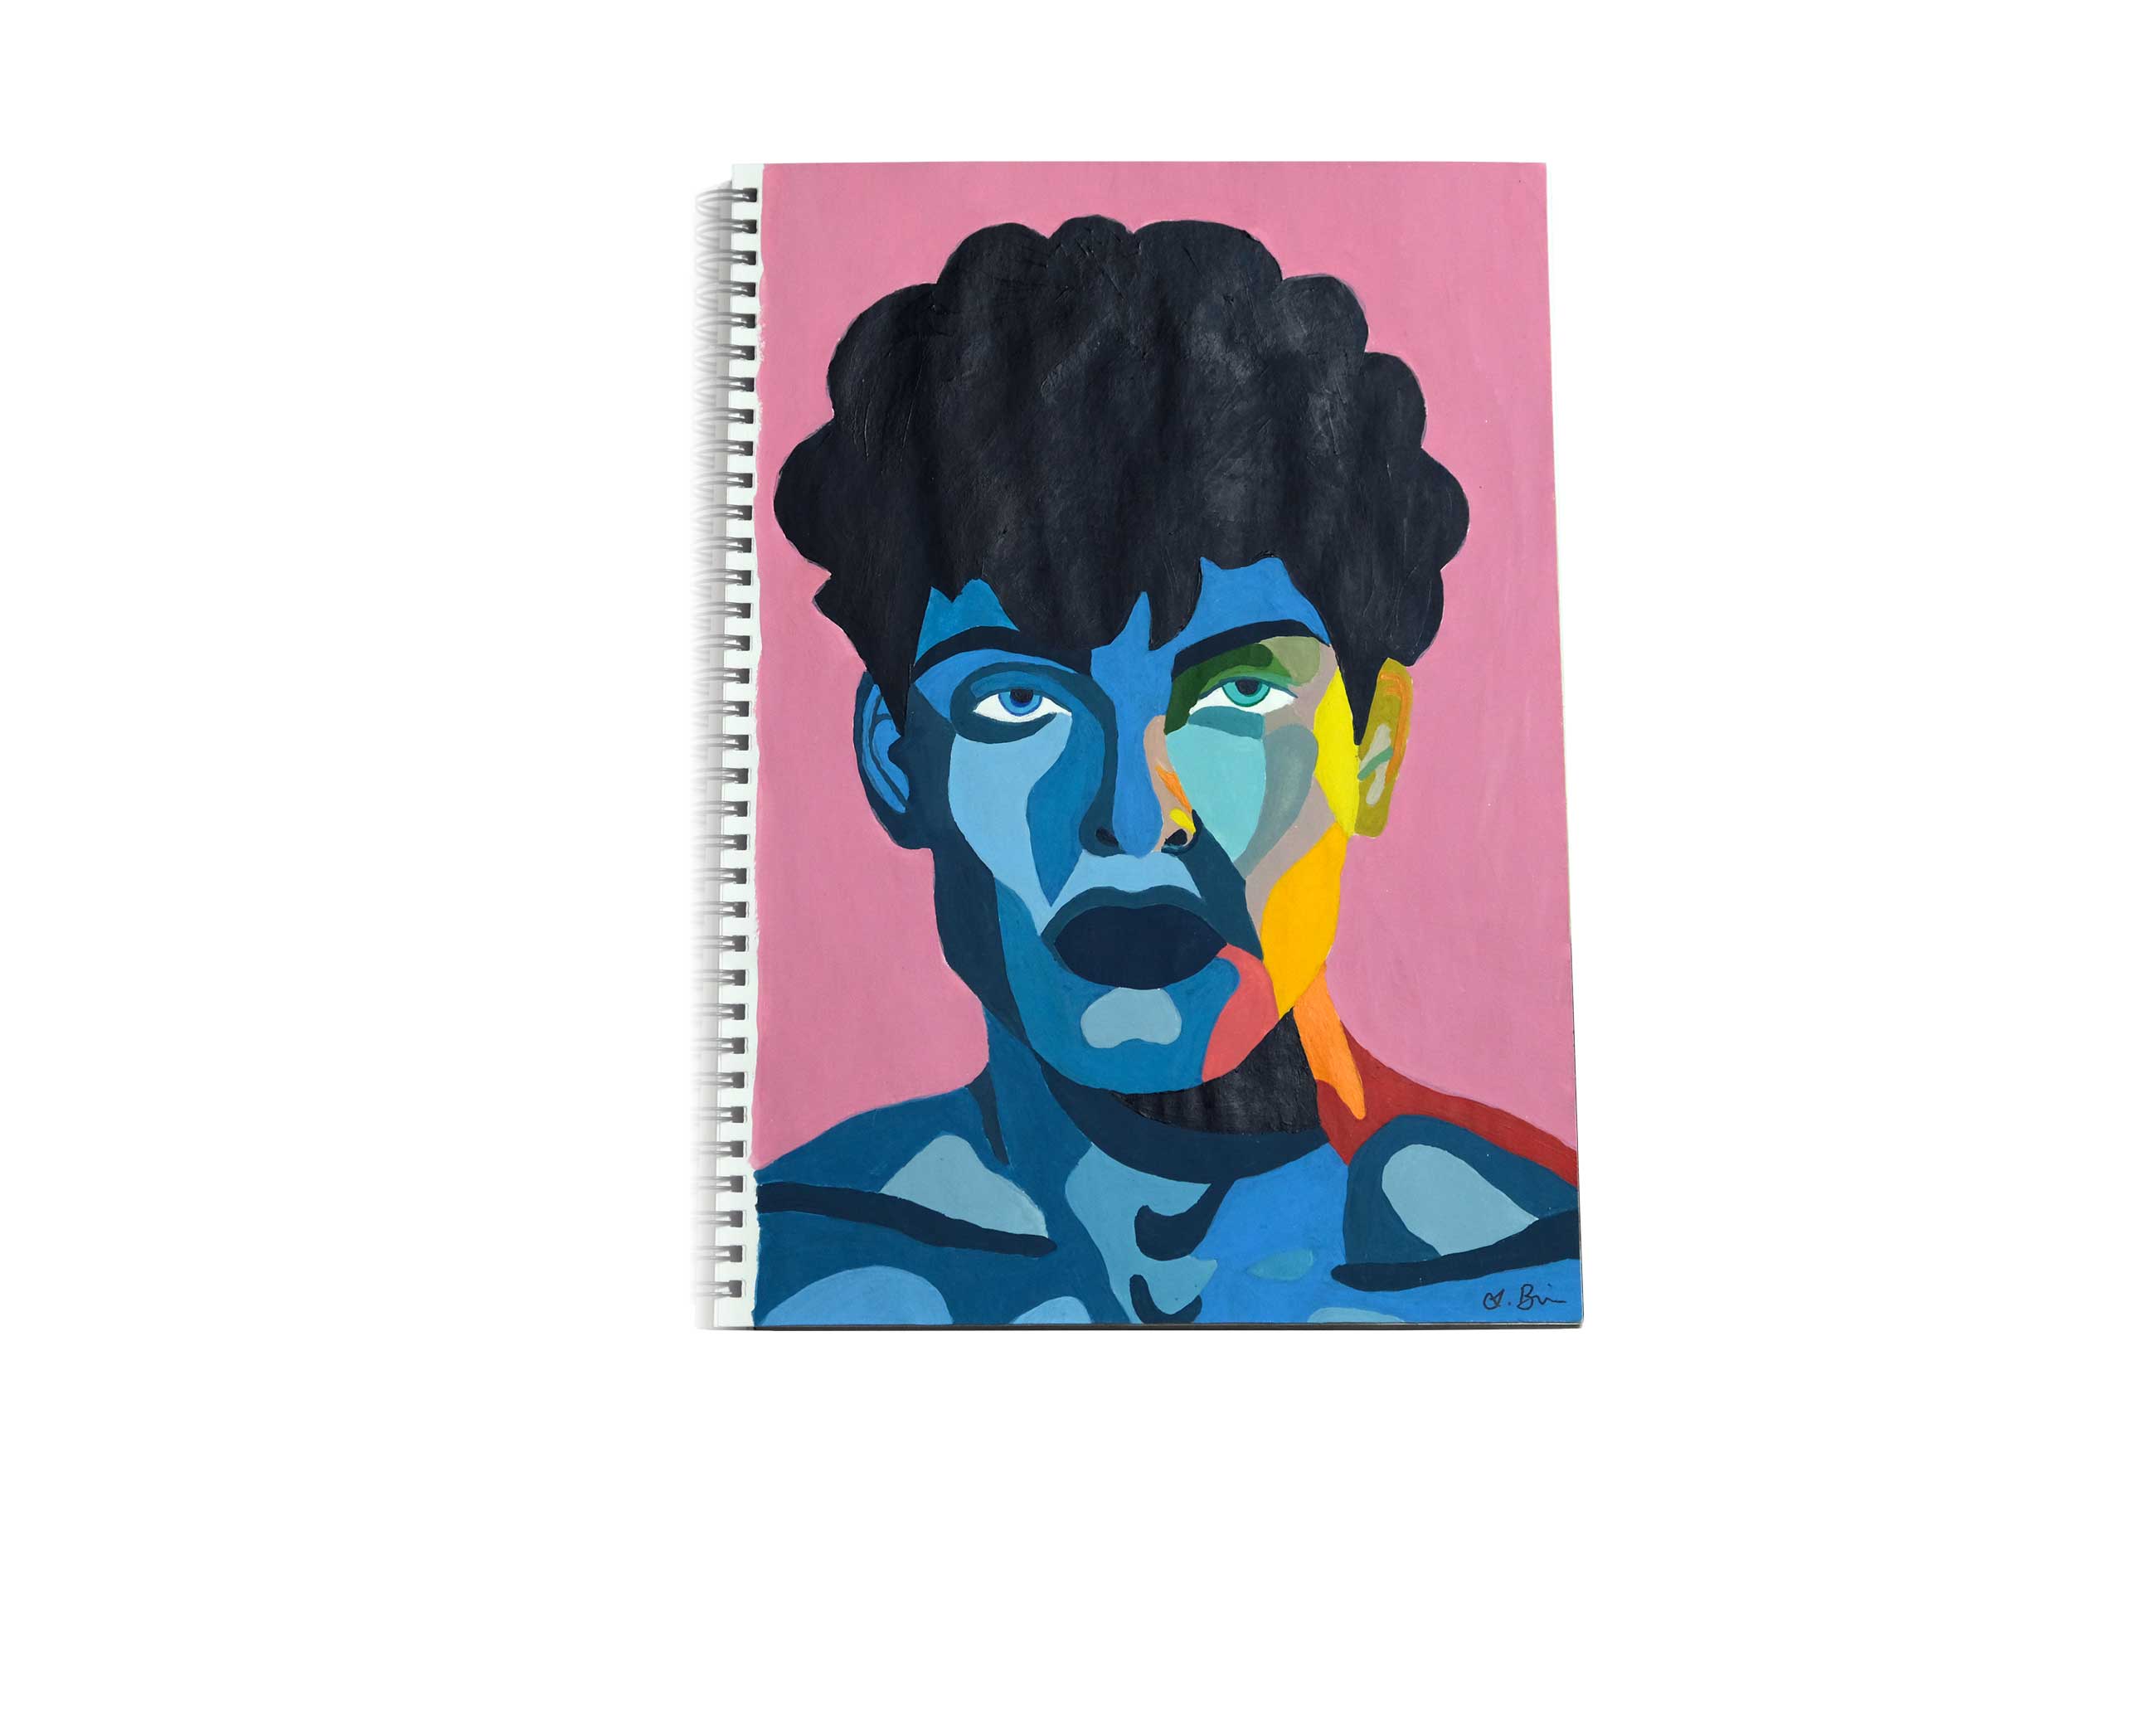 Bunte Acryl Zeichnung im HEMPA Block. Ein männliches Gesicht in Blautönen auf Pinkem Hintergrund.